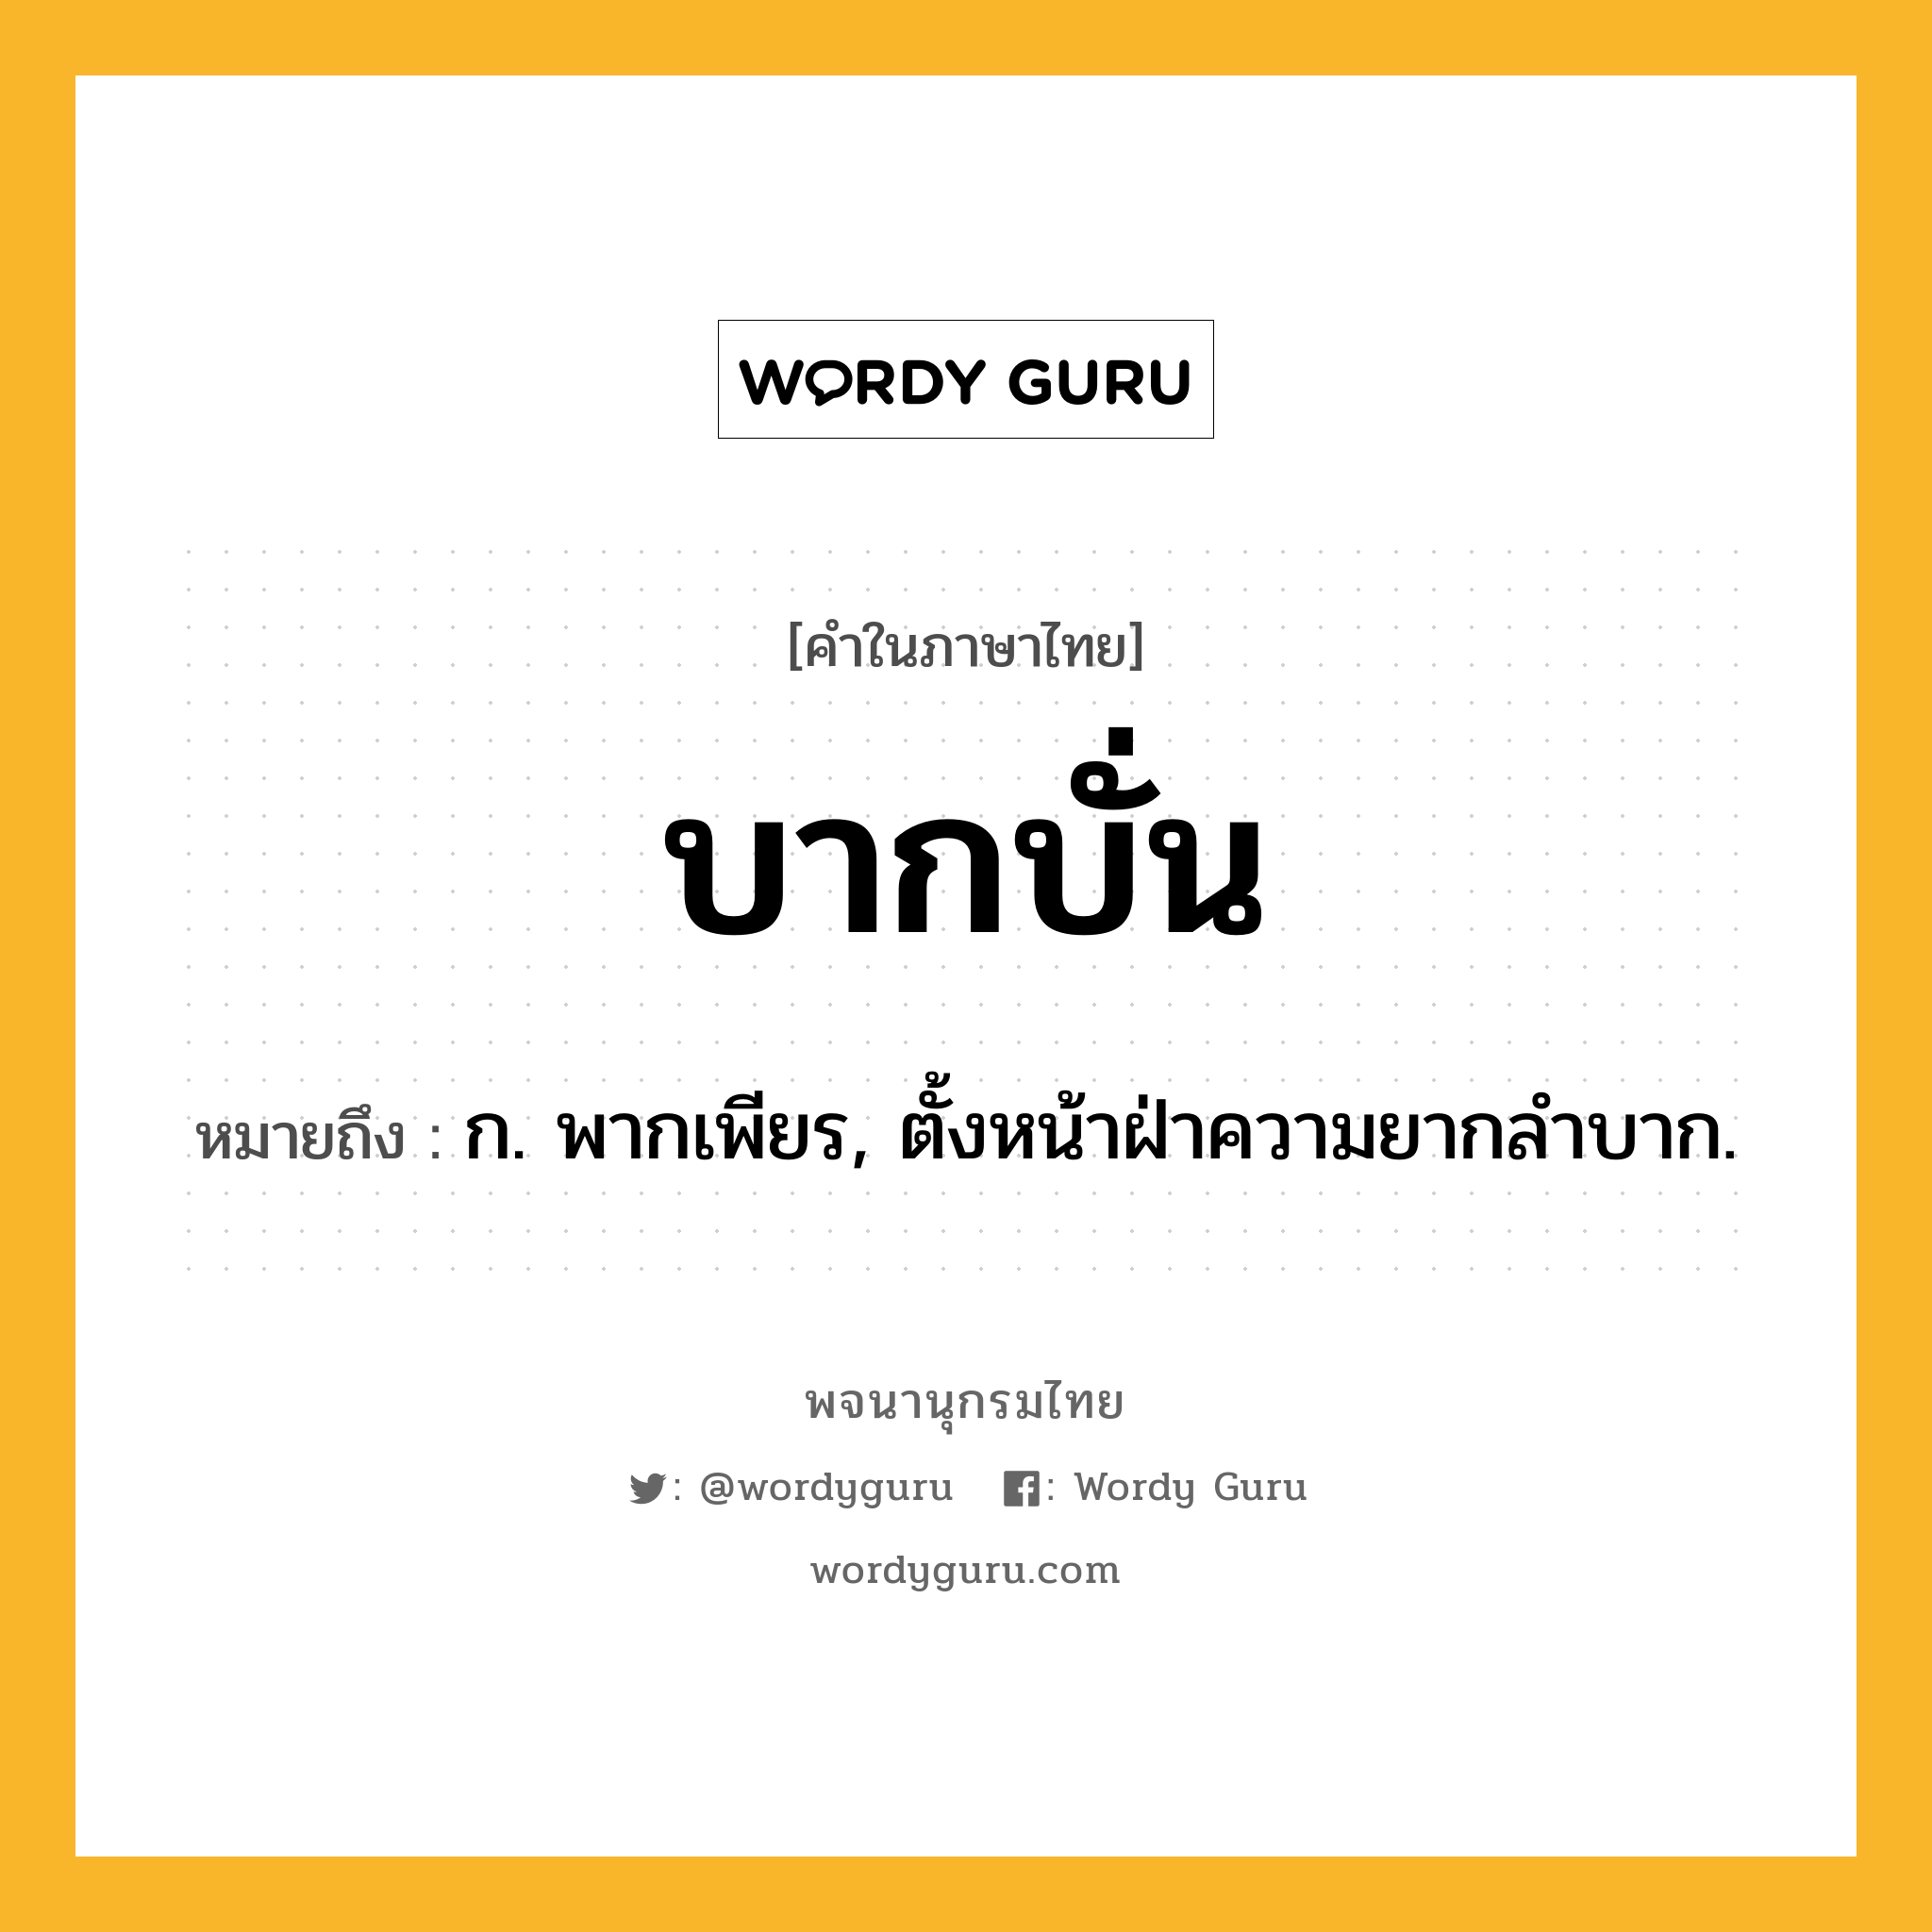 บากบั่น ความหมาย หมายถึงอะไร?, คำในภาษาไทย บากบั่น หมายถึง ก. พากเพียร, ตั้งหน้าฝ่าความยากลําบาก.